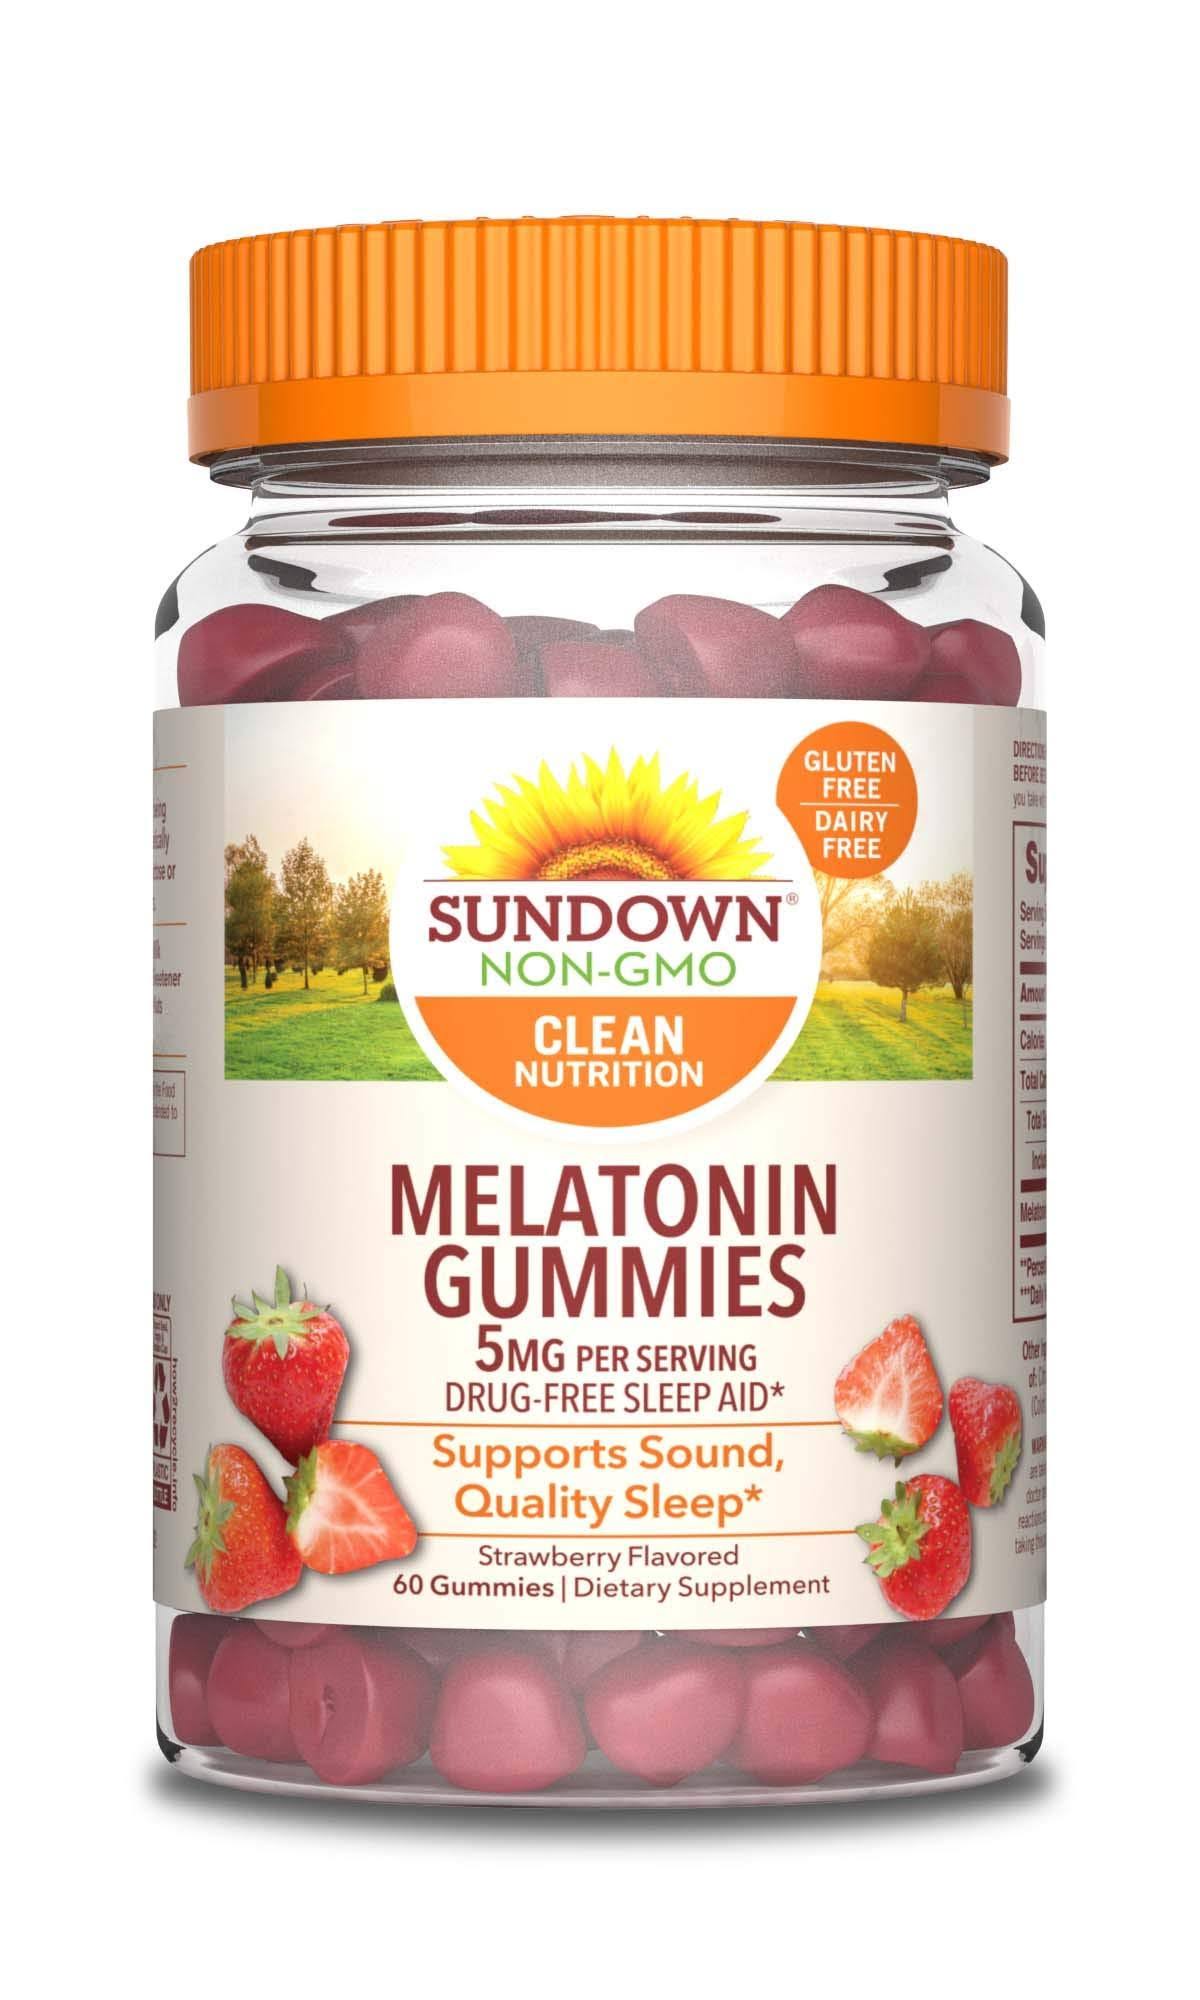 Sundown Naturals Melatonin Strawberry Dietary Supplement - 5mg, 60 Gummies